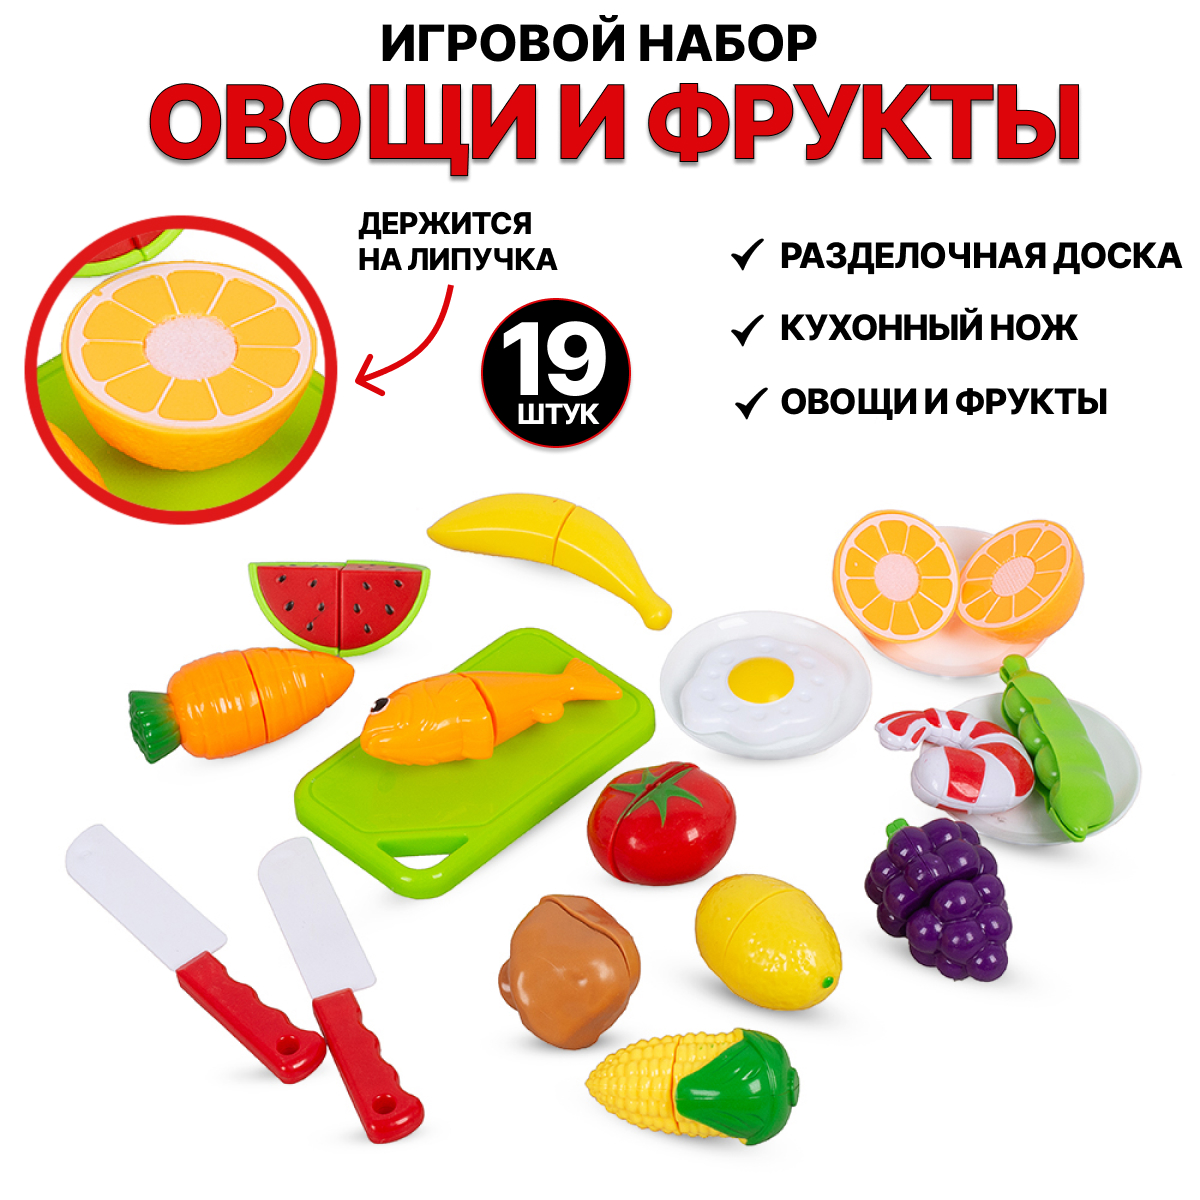 Игровой набор Tongde Овощи и фрукты для резки на липучках 19 предметов 666-85 игровой набор продуктов tongde резки на липучках с ножами 12 предметов yw3025